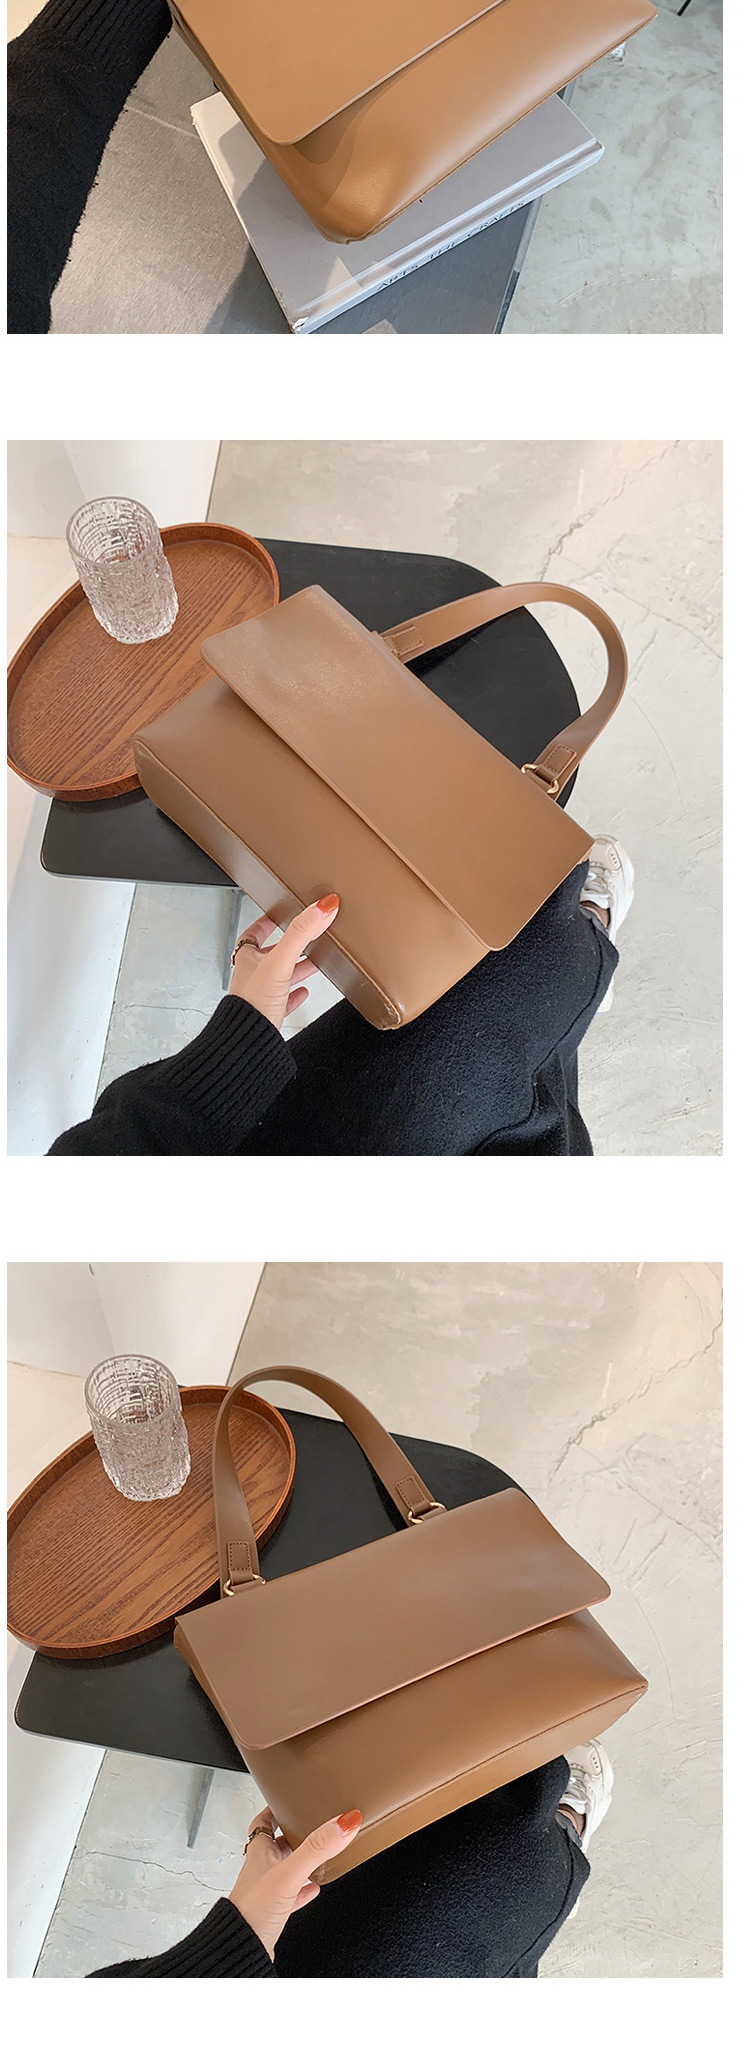 Fashion Khaki Flap Solid Color Soft Leather One-shoulder Armpit Bag,Messenger bags